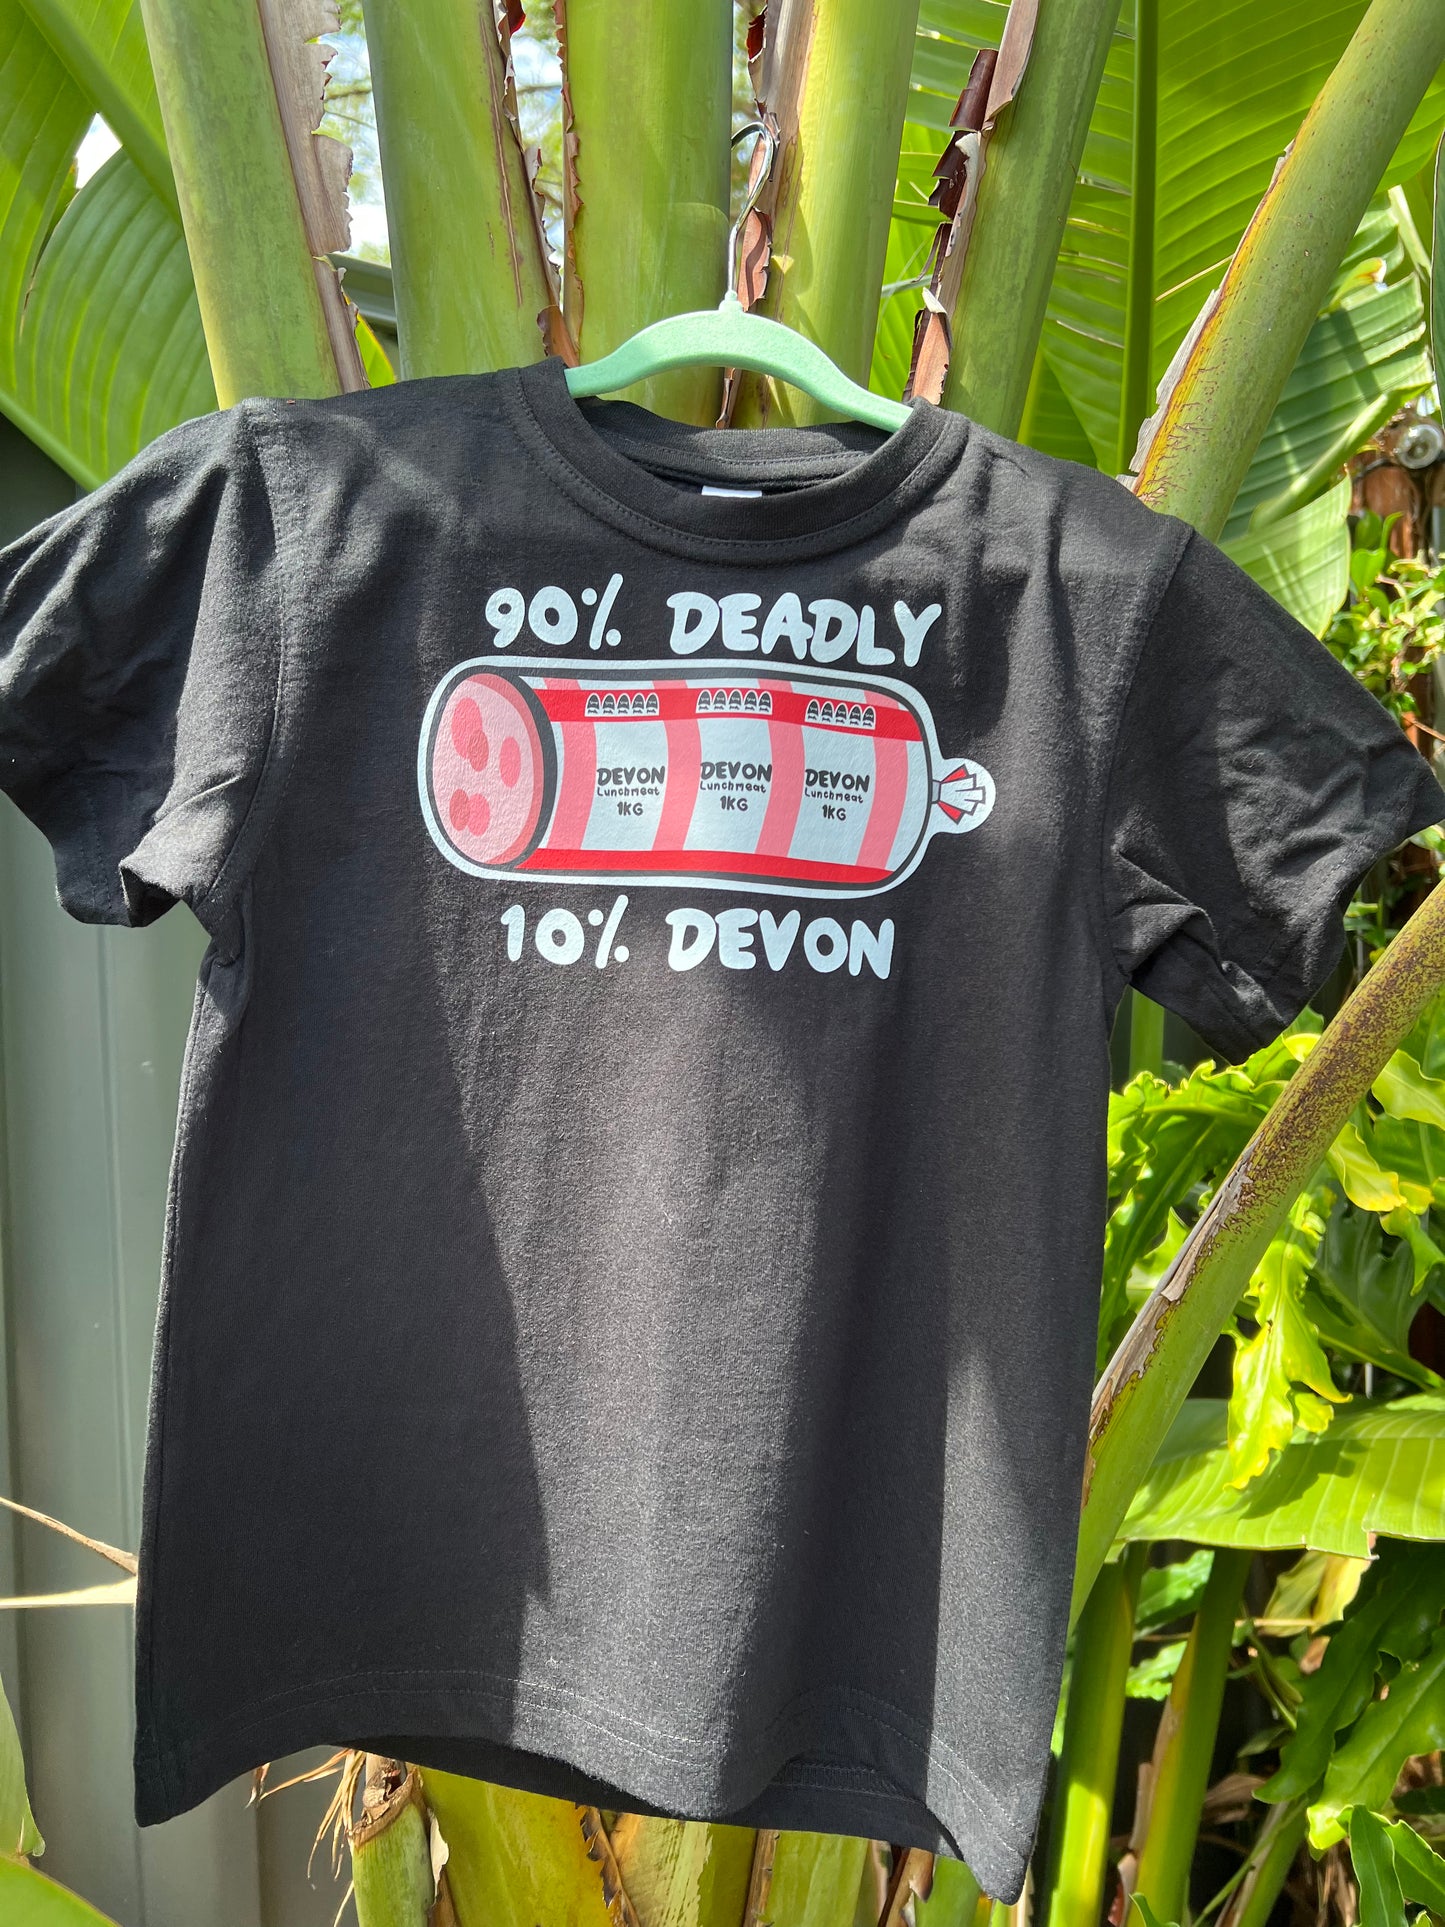 Deadly Devon Kids Shirt